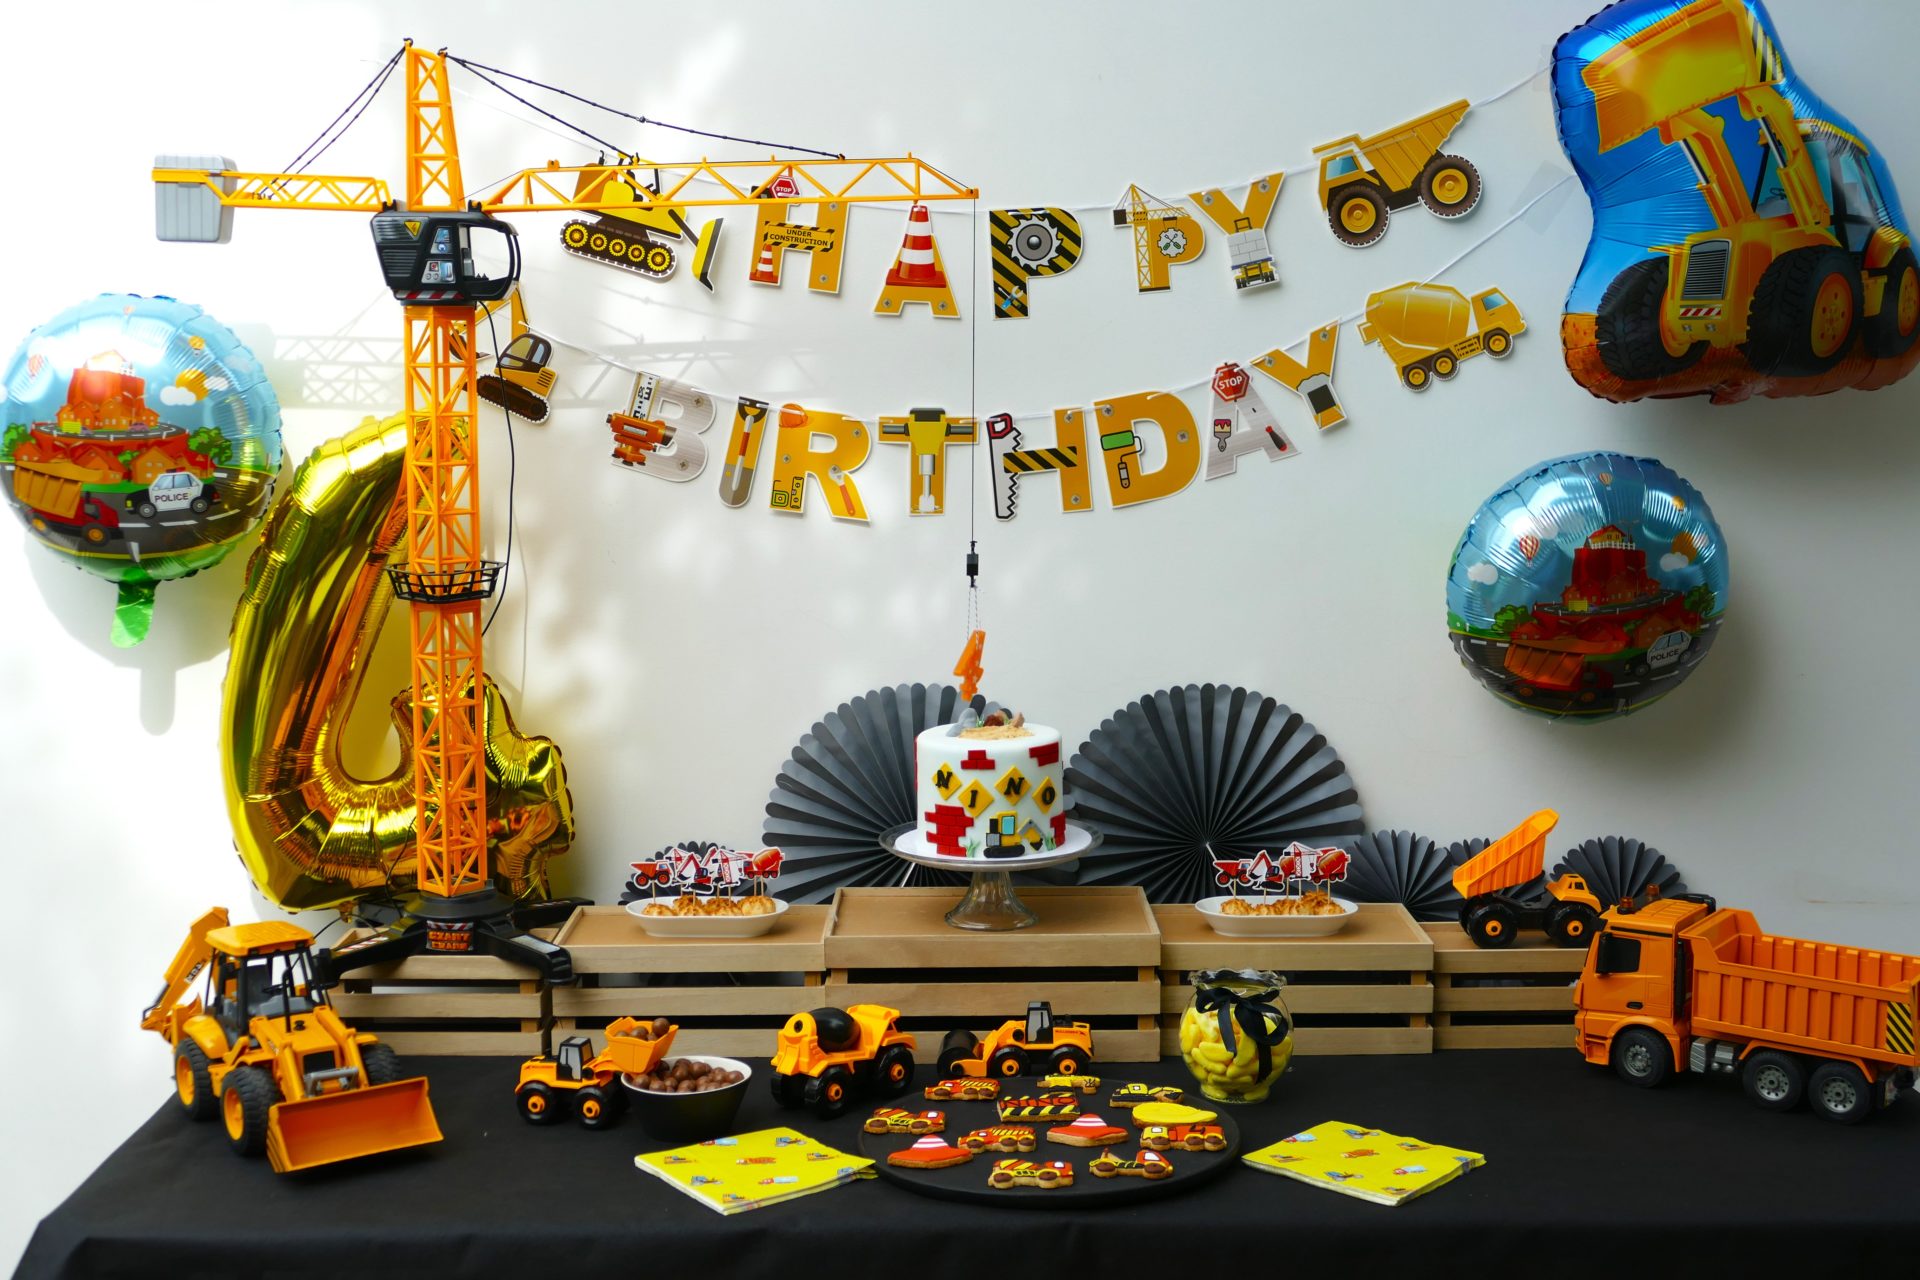 L'anniversaire chantier des 4 ans de Nino - Studio Candy